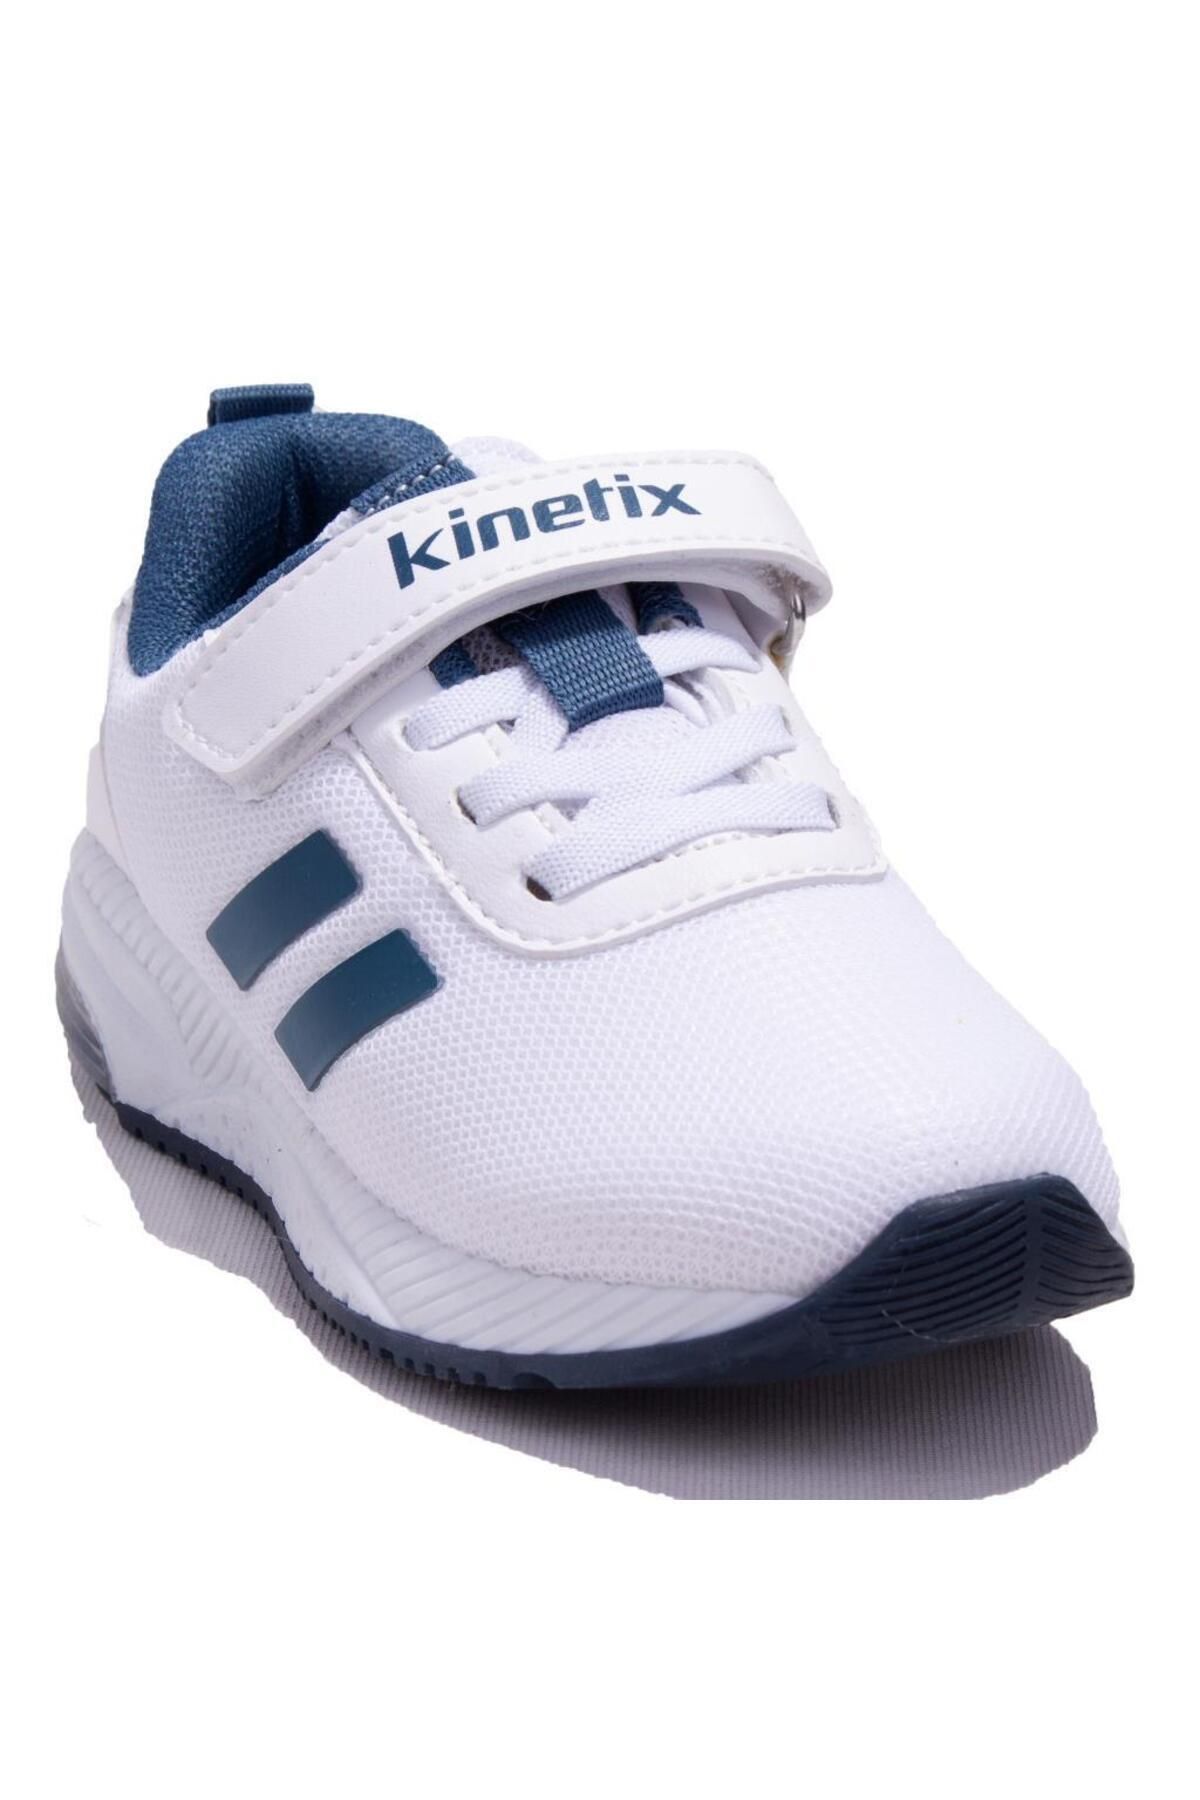 Kinetix Korper II Beyaz Lacivert Ortopedik Günlük Işıklı  Erkek Çocuk Spor Ayakkabı